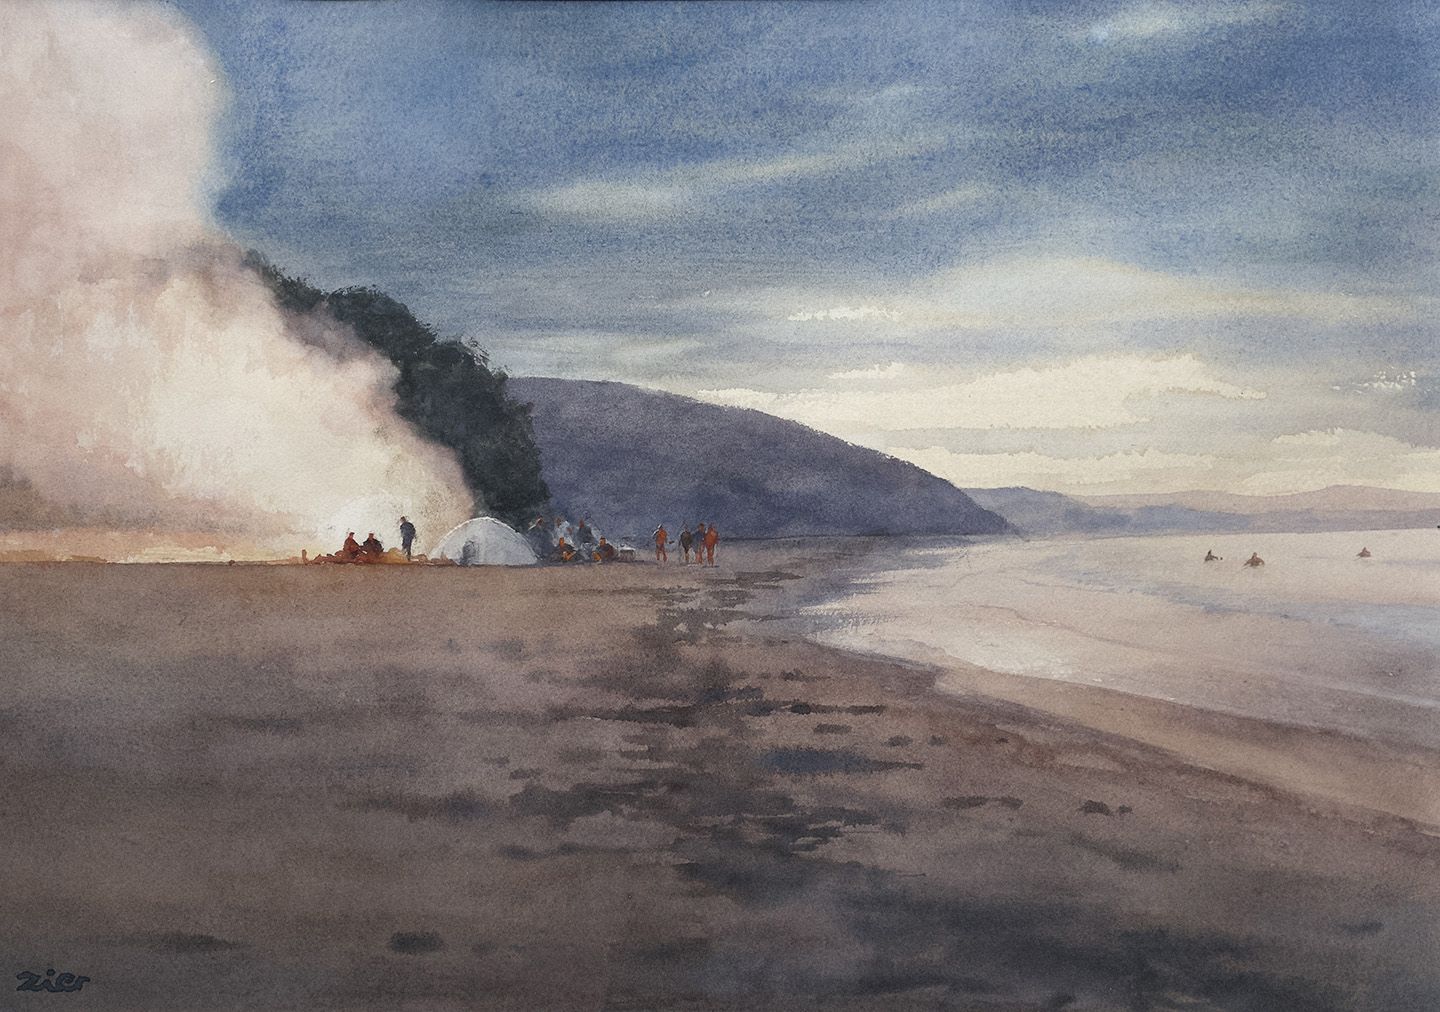 Bonfire on the Beach by Kasper Zier